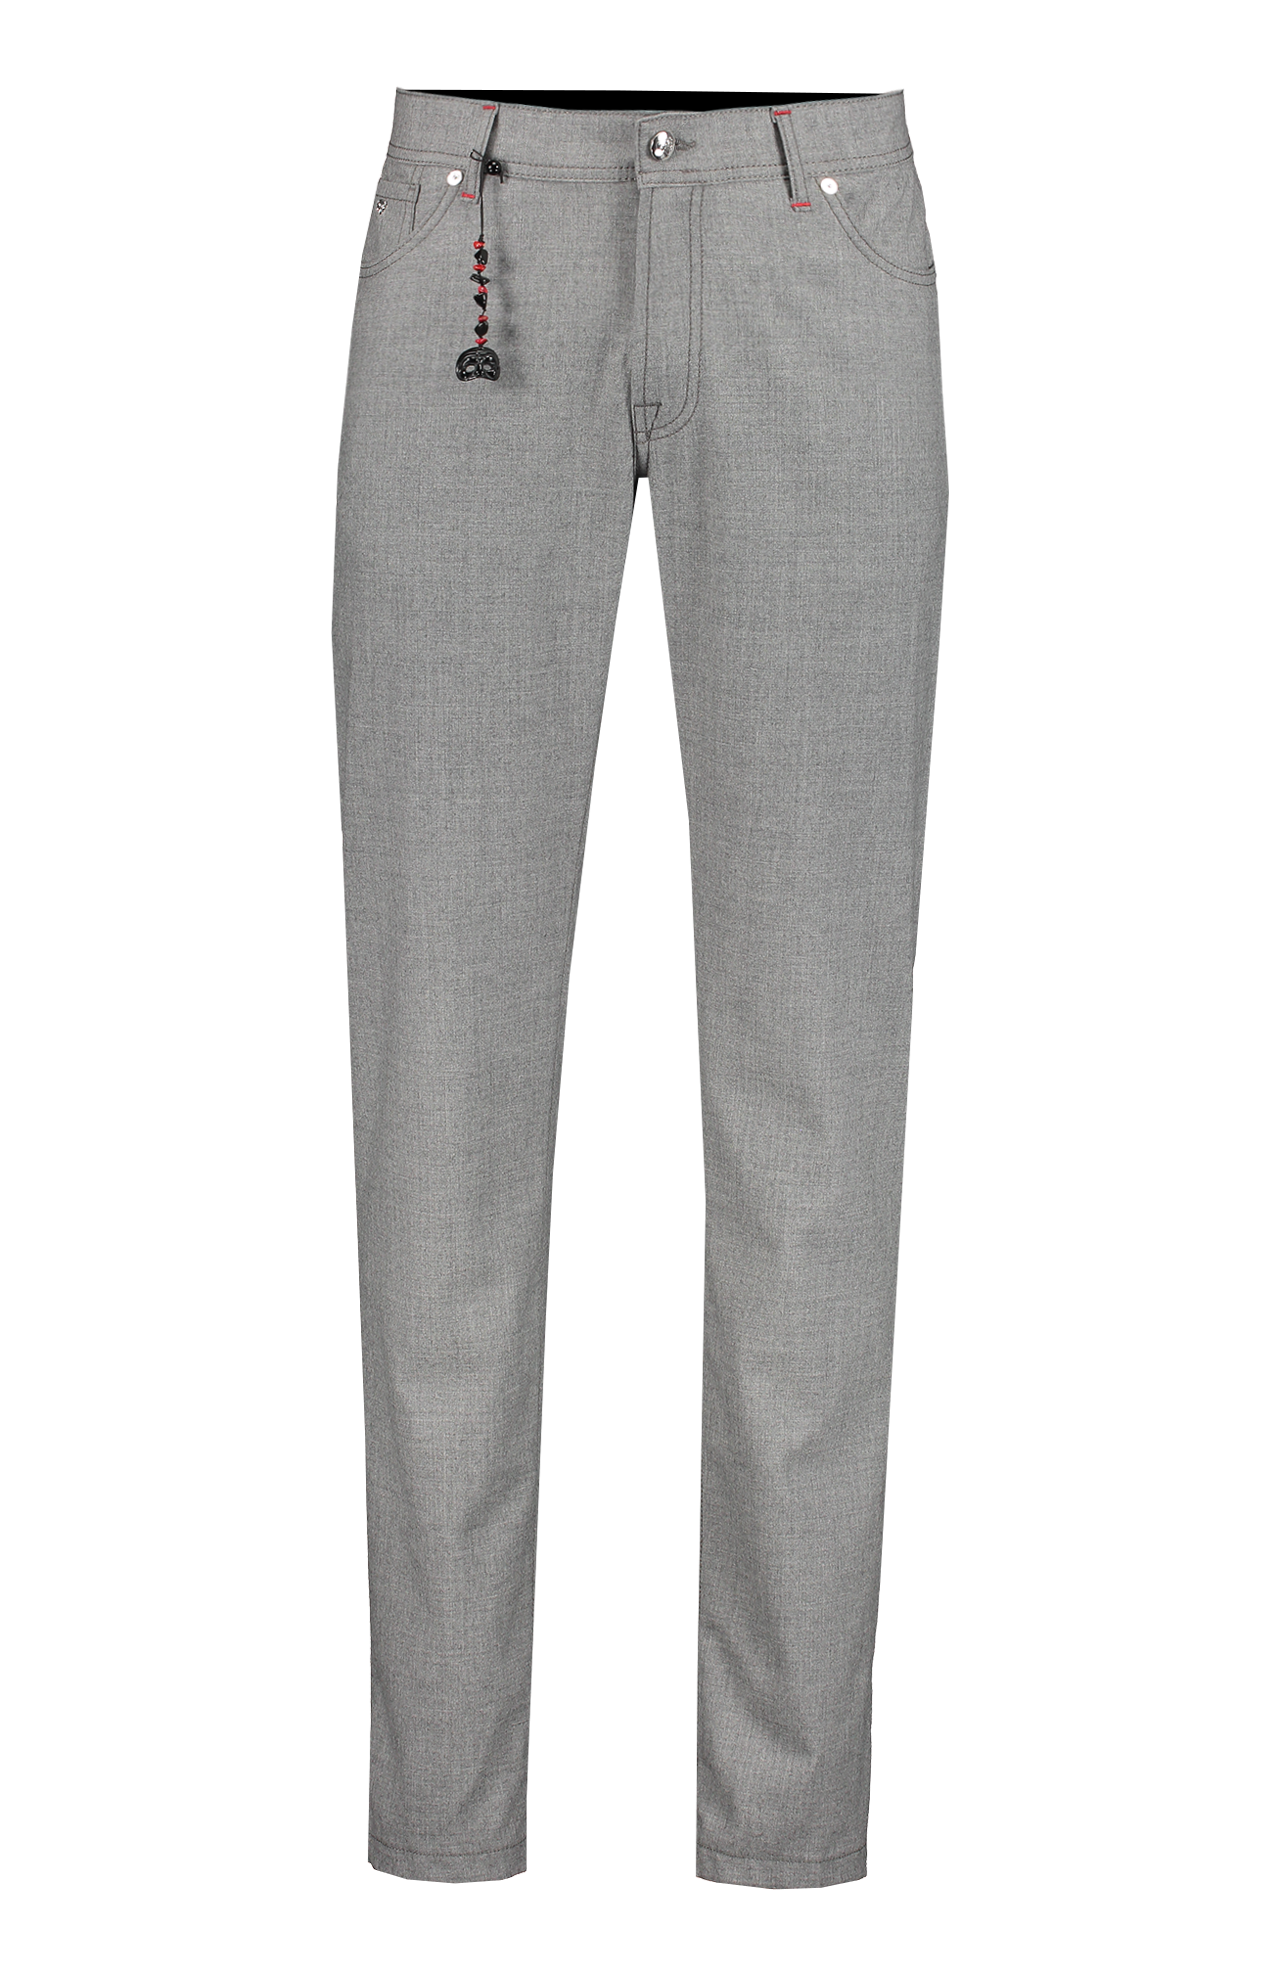 Pescarolo Kashmir Trousers Front Mannequin Image (6934923378803)